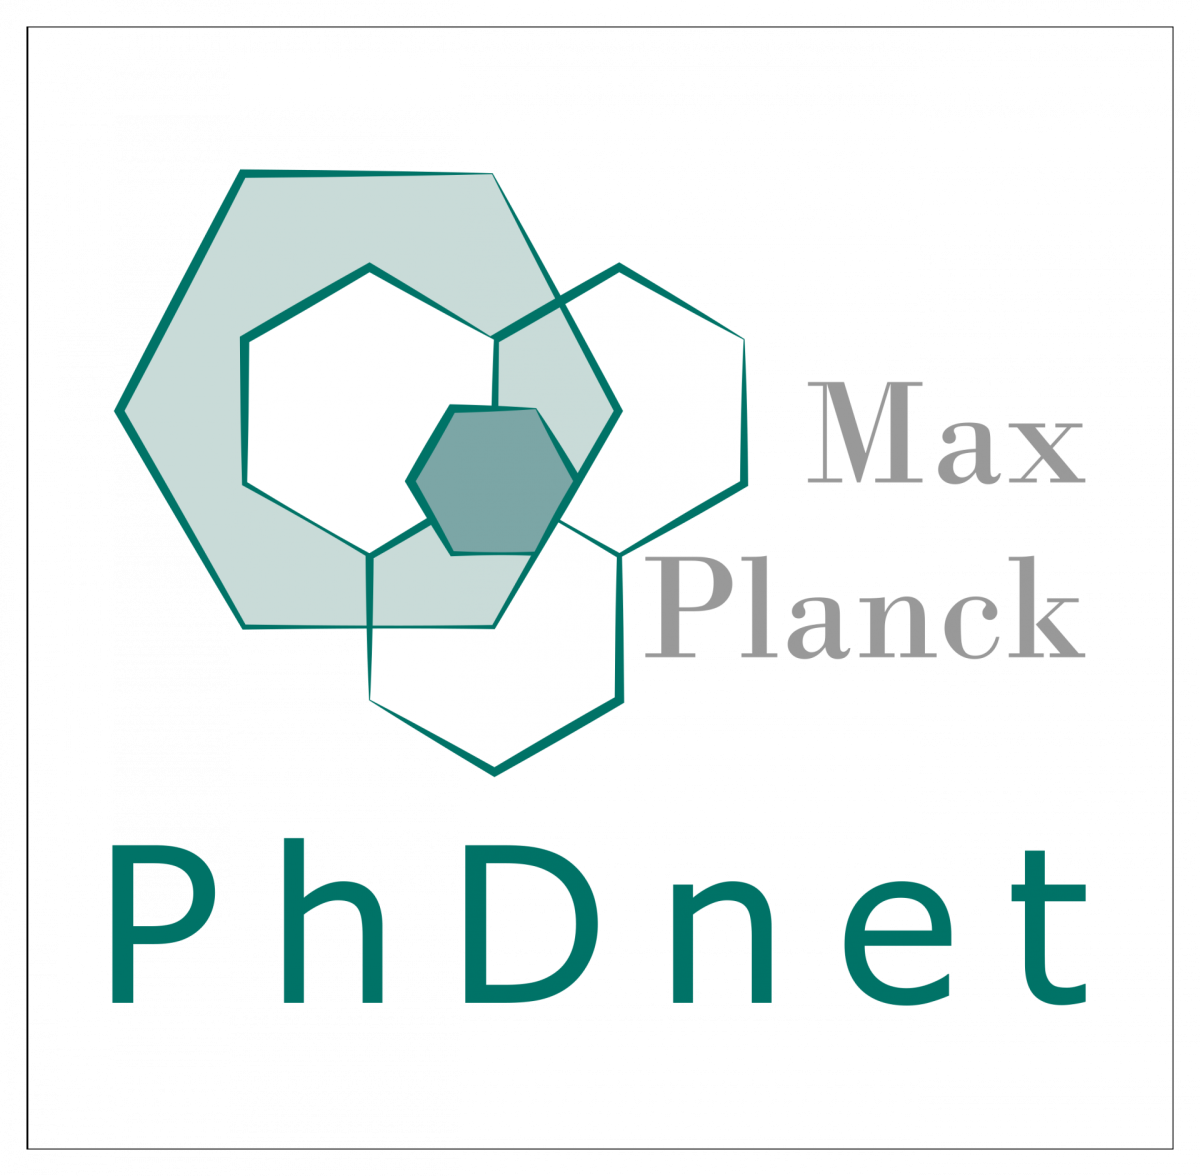 Logo of the PhDnet